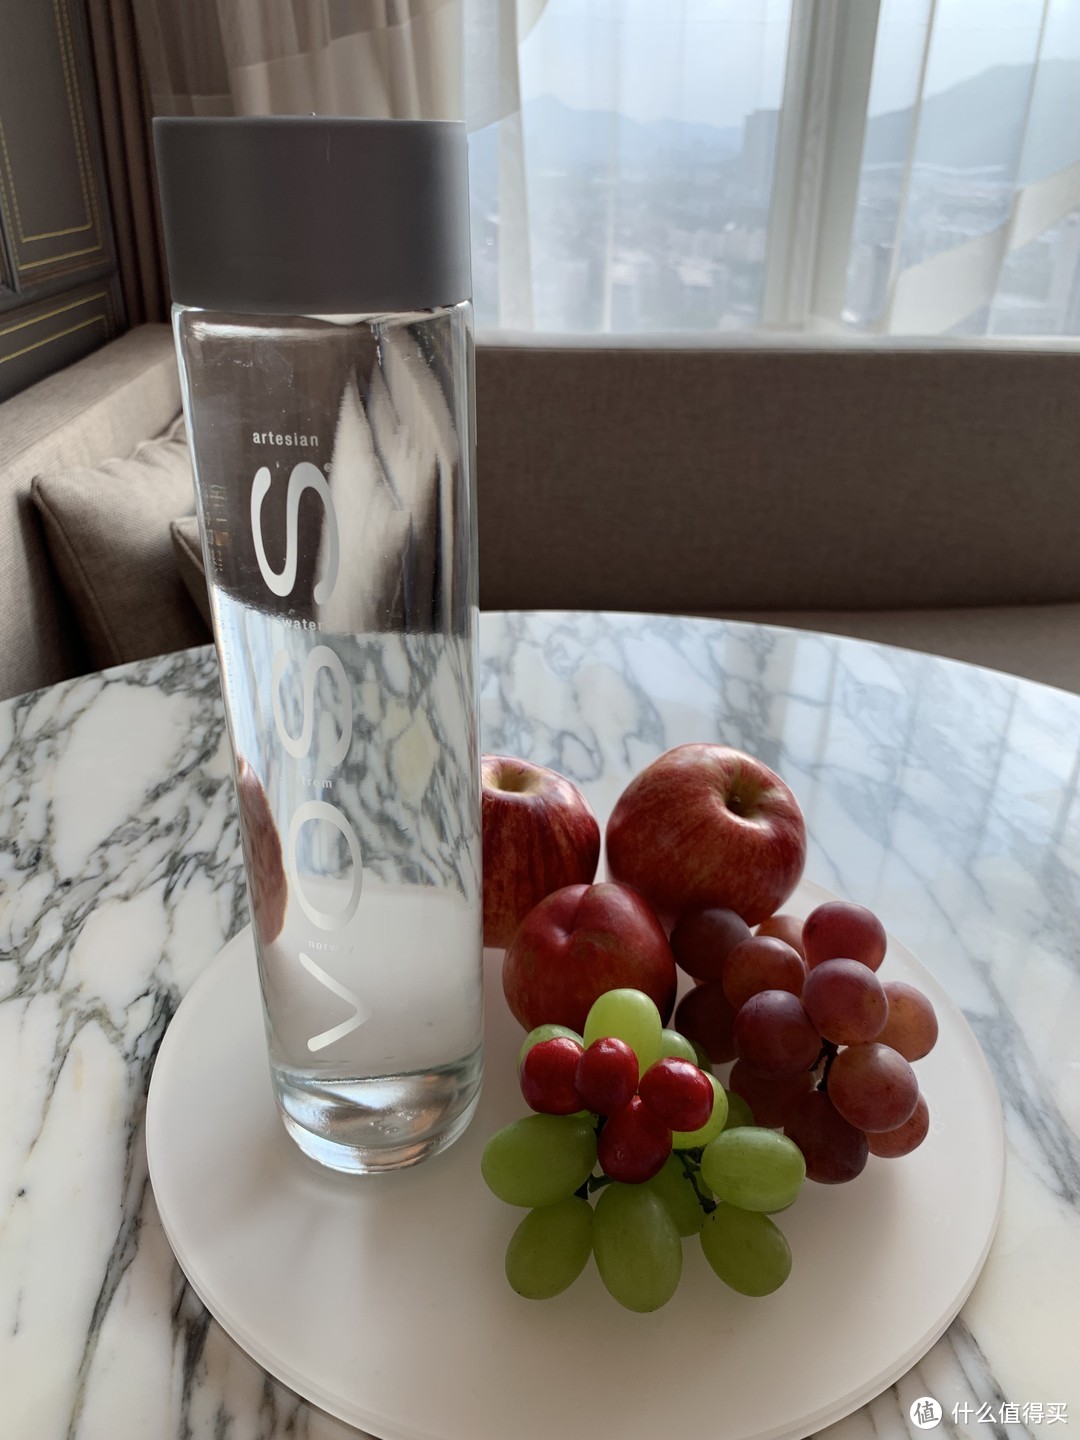 酒店的欢迎礼物还是比较好的，一瓶VOSS的气泡水，还是新鲜的水果，味道都不错